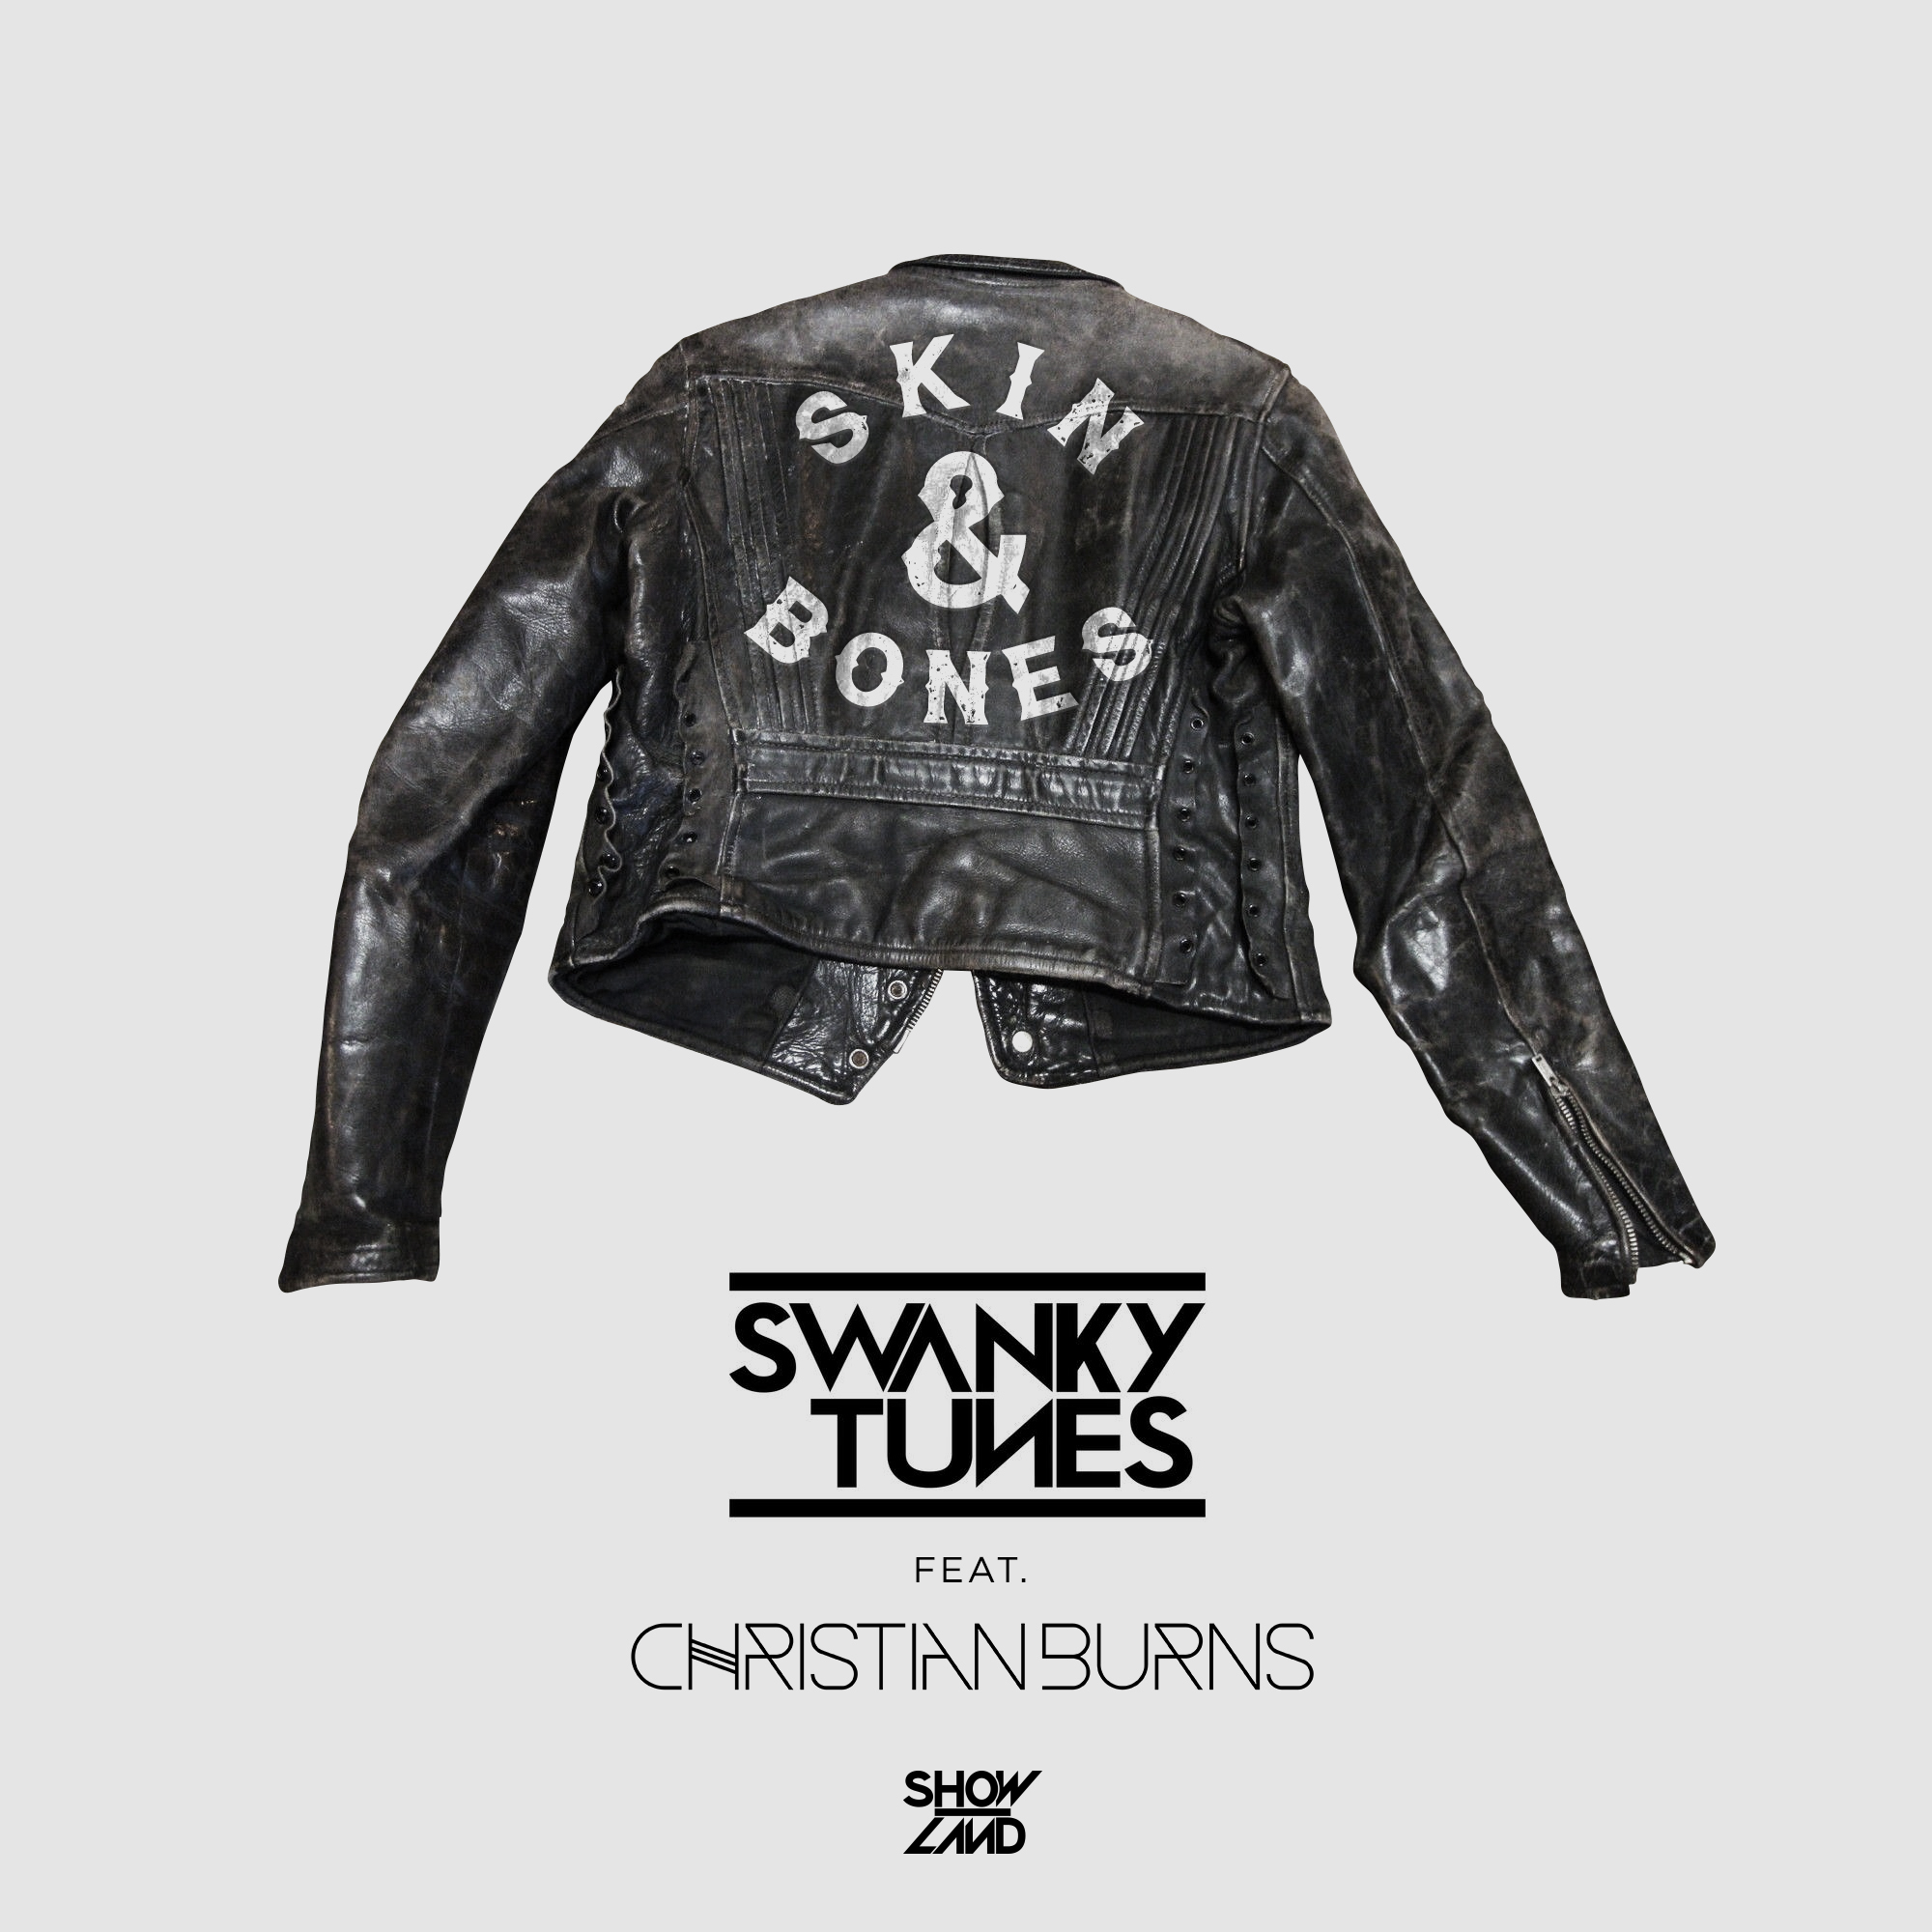 Swanky tunes remix. Skin & Bones Swanky Tunes & Christian Burns. Bones Swanky Tunes. Swanky Tunes ft. Christian Burns - Skin & Bones (Radio Edit). Skin and Bones одежда.